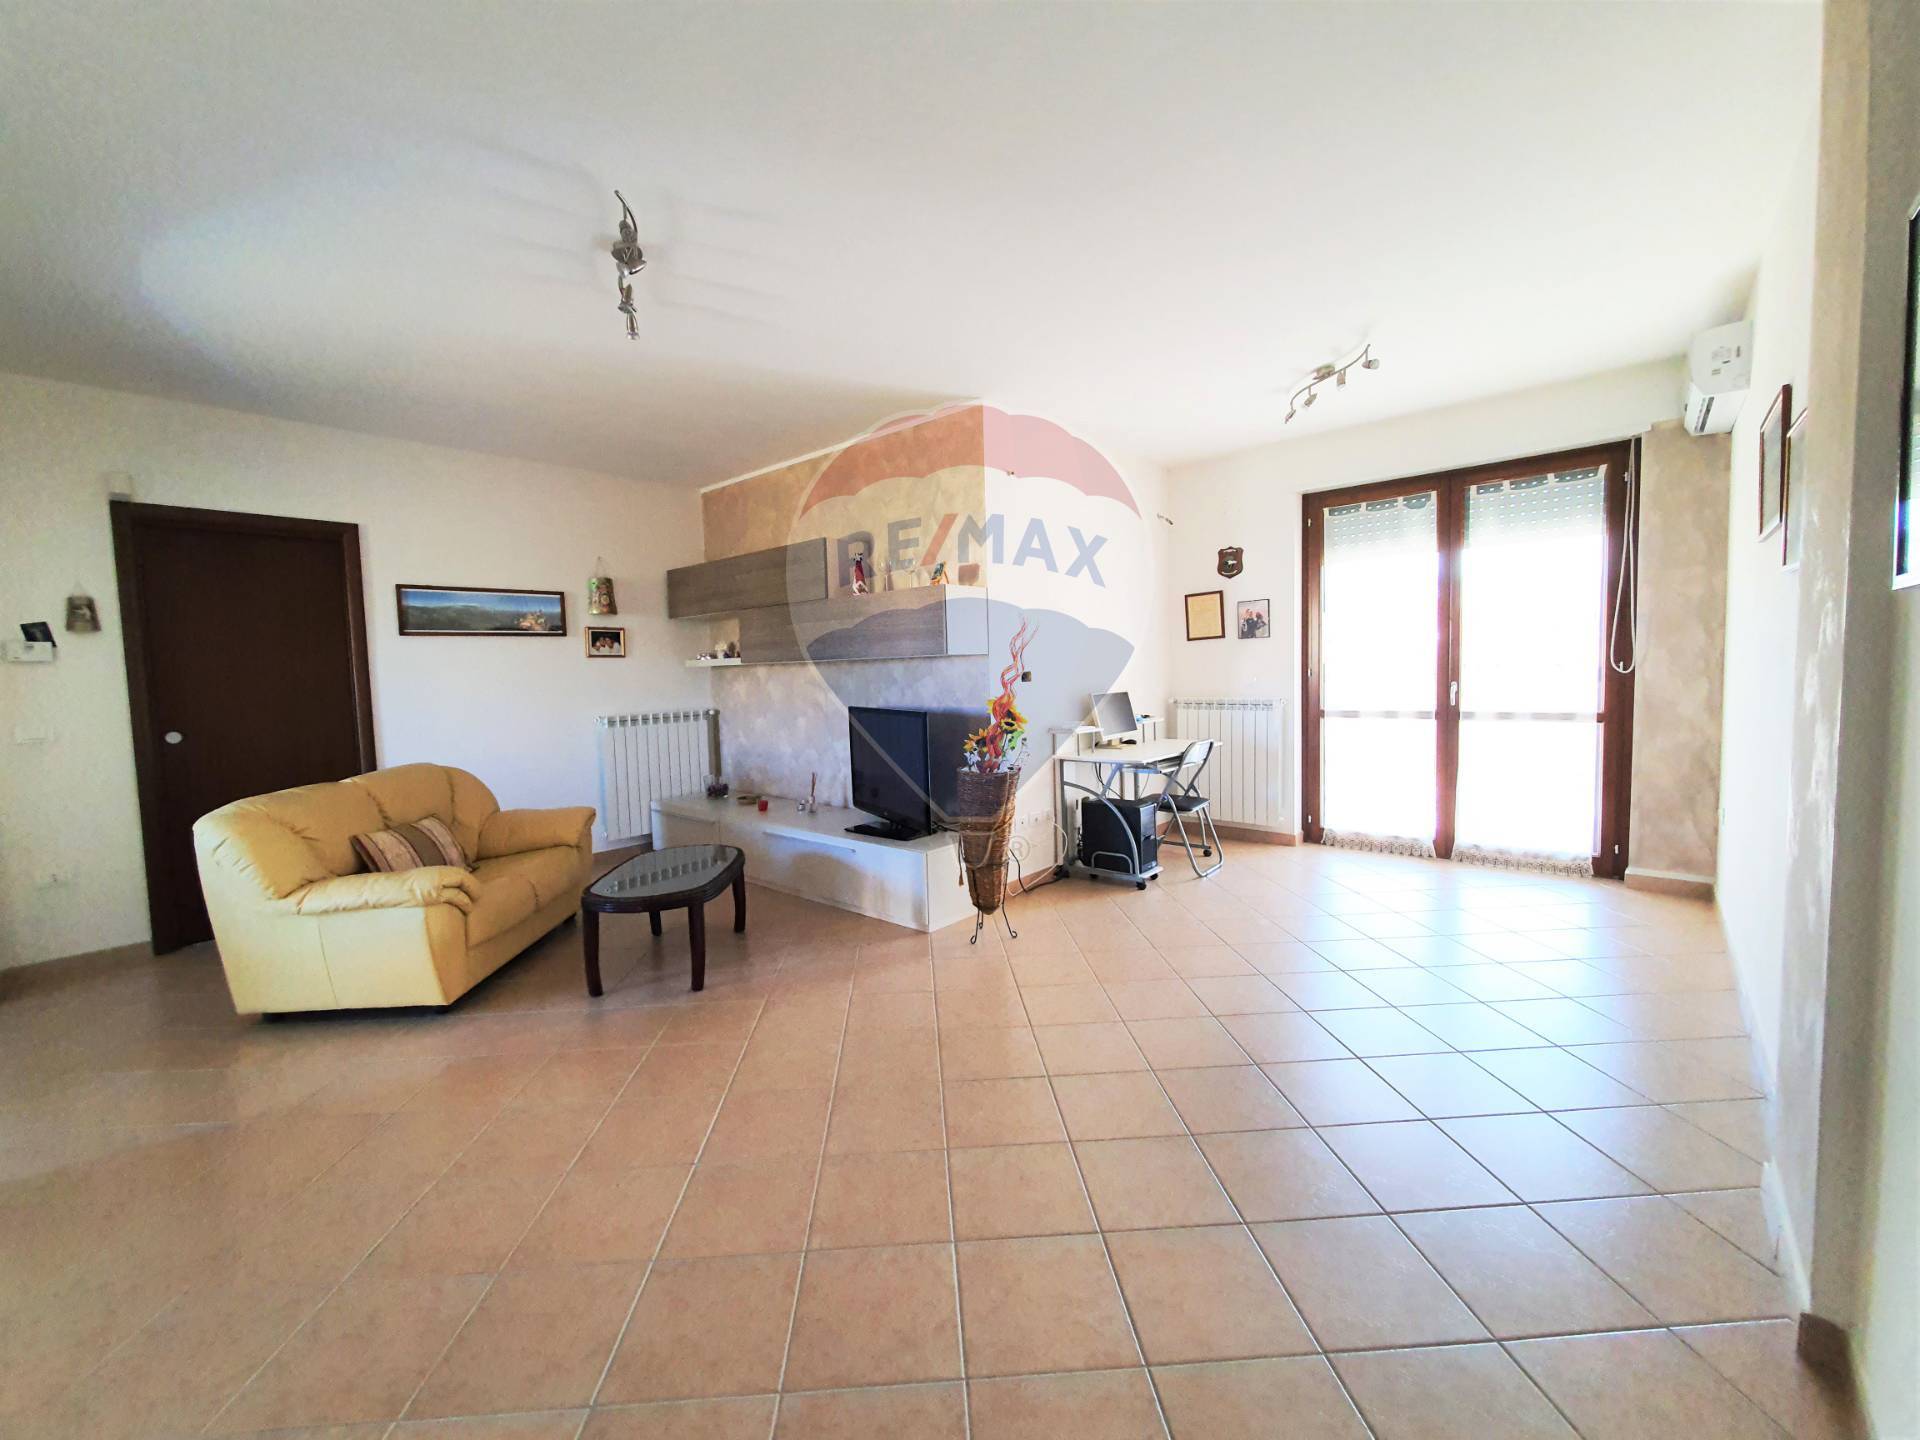 Appartamento in vendita a Atessa, 7 locali, prezzo € 120.000 | CambioCasa.it